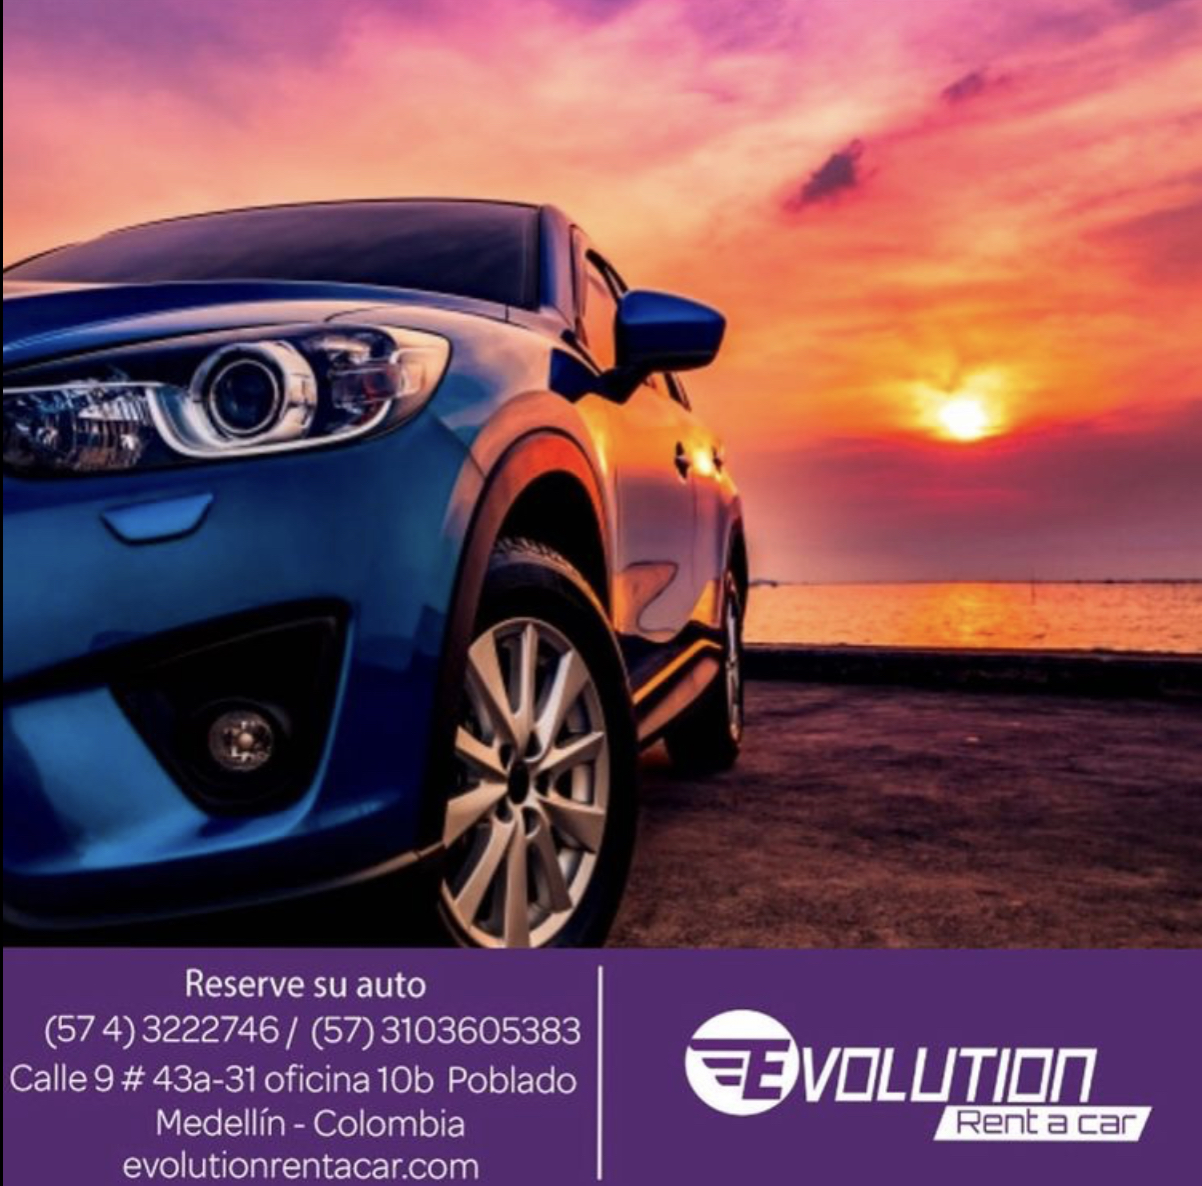 Renta de Carros en Cartagena – Evolution Rent A Car – Carros Económicos